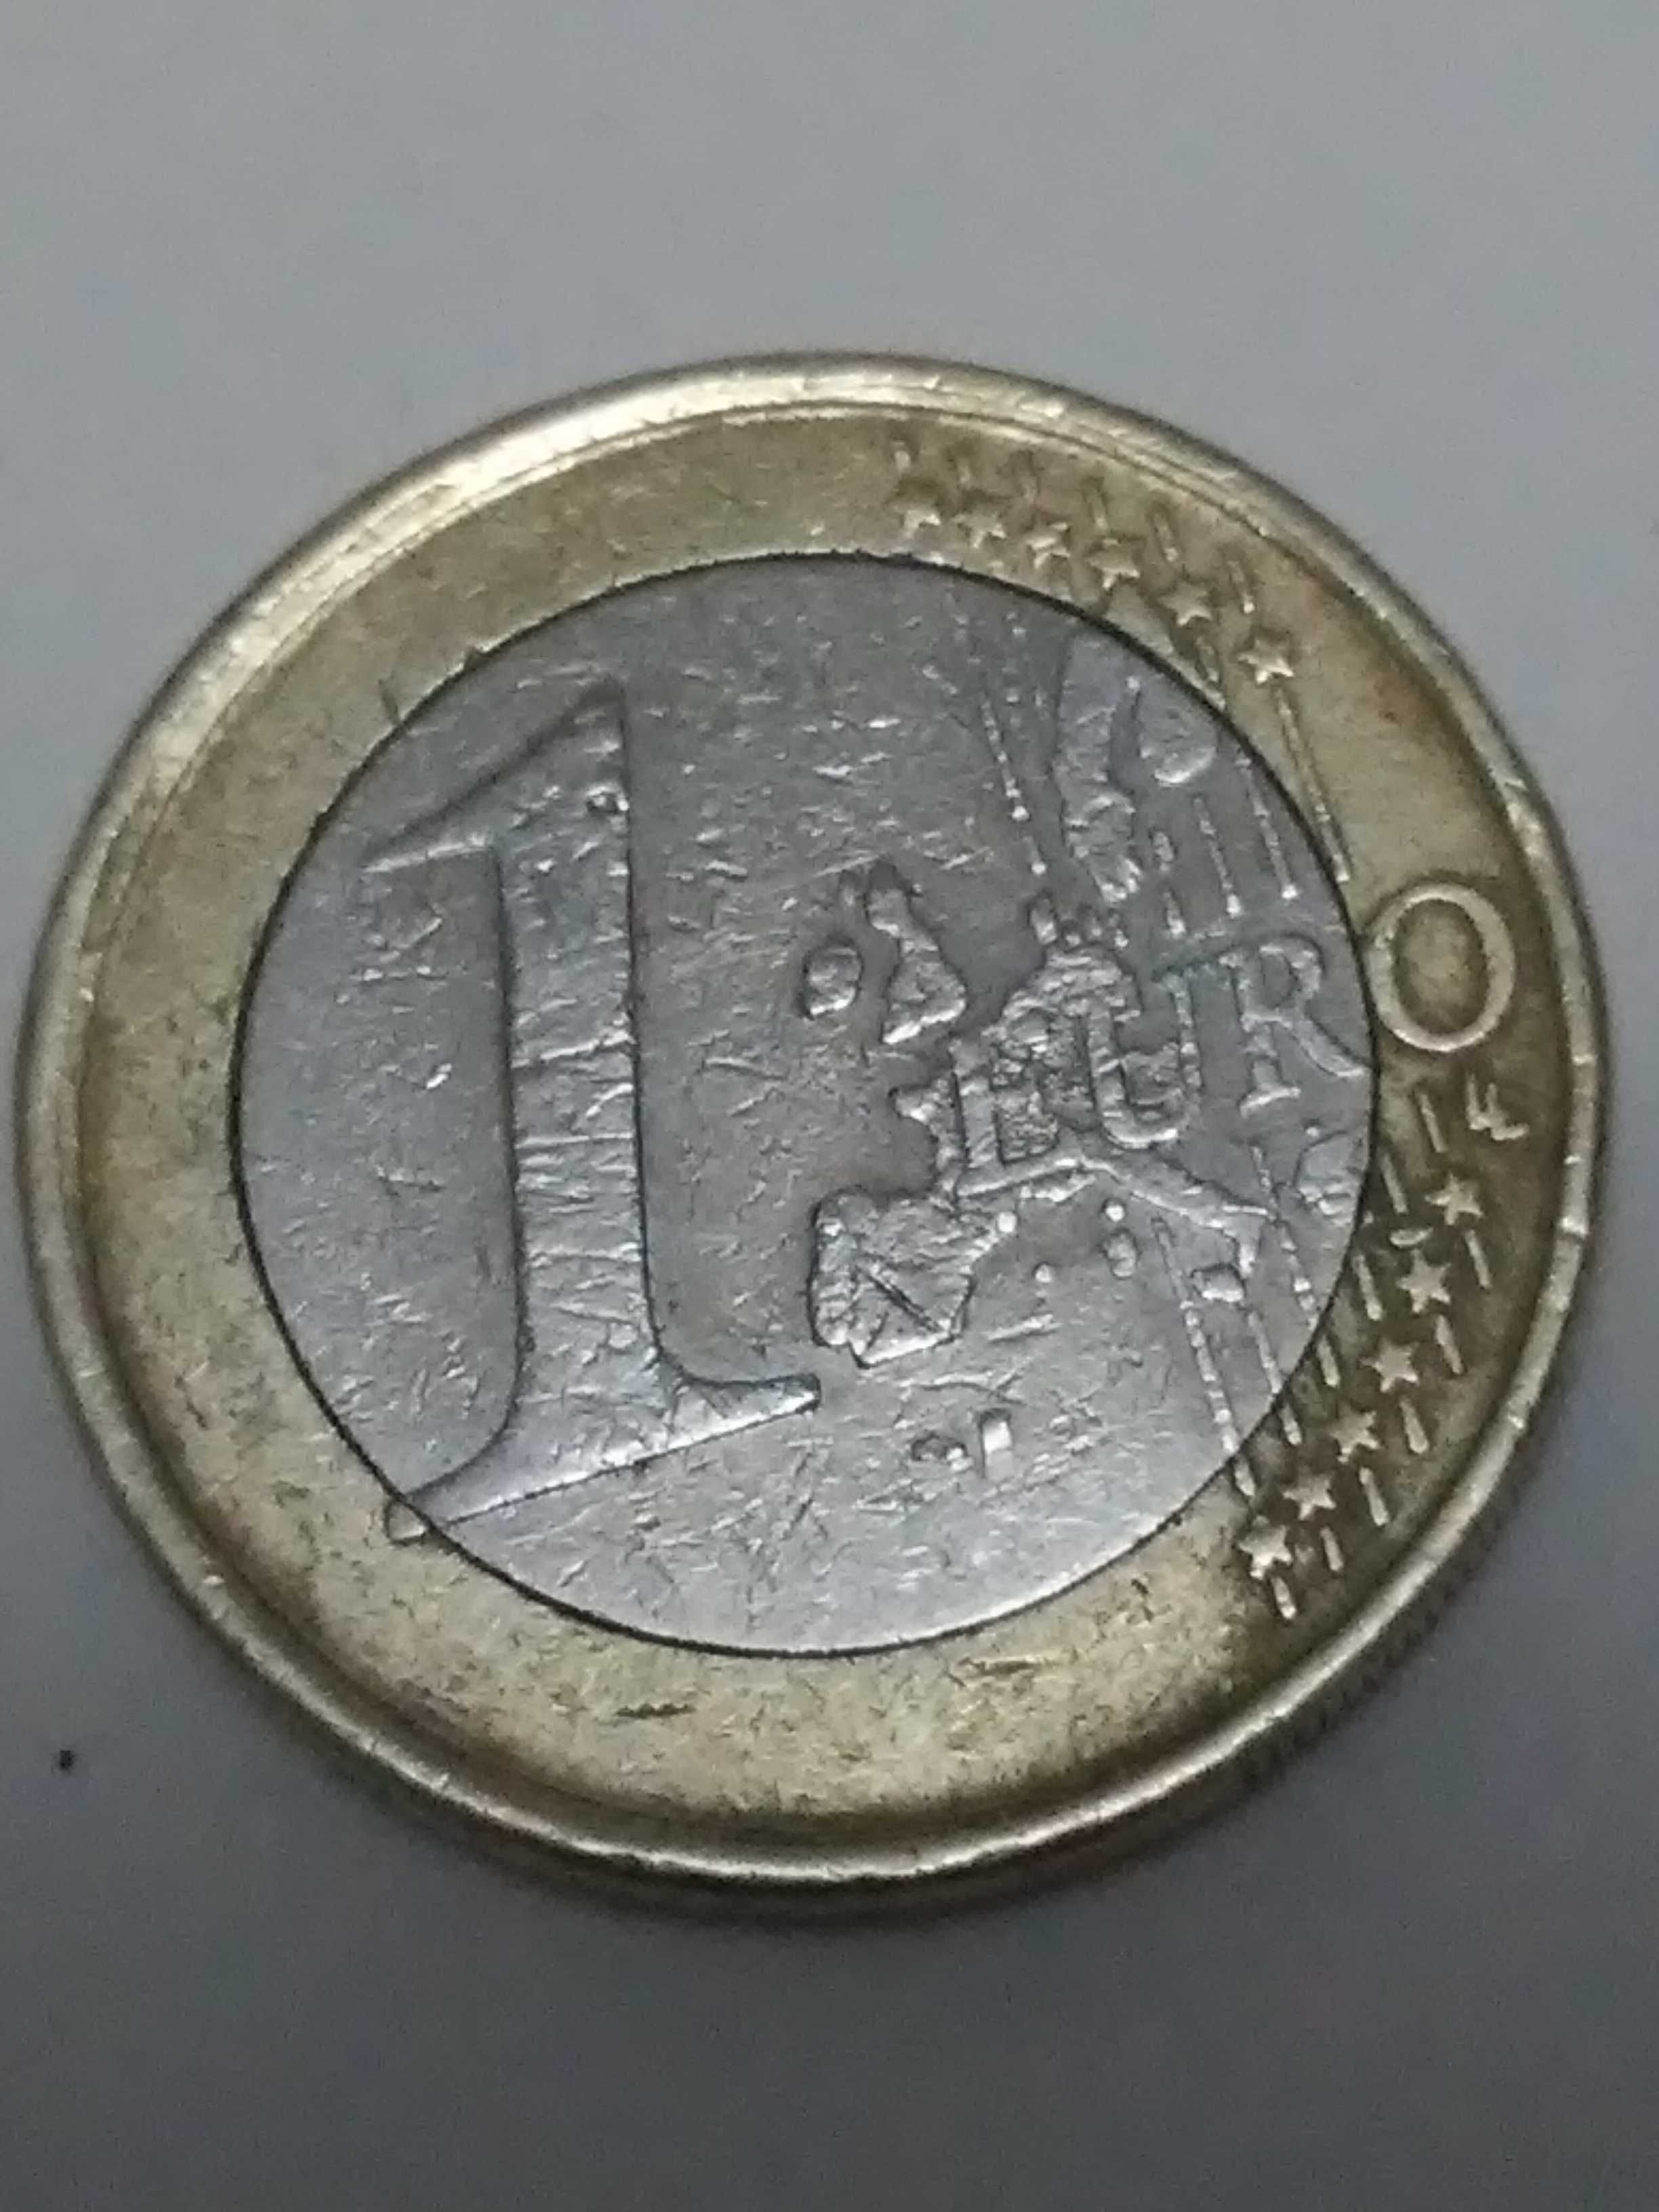 Moeda de 1 euro com defeito